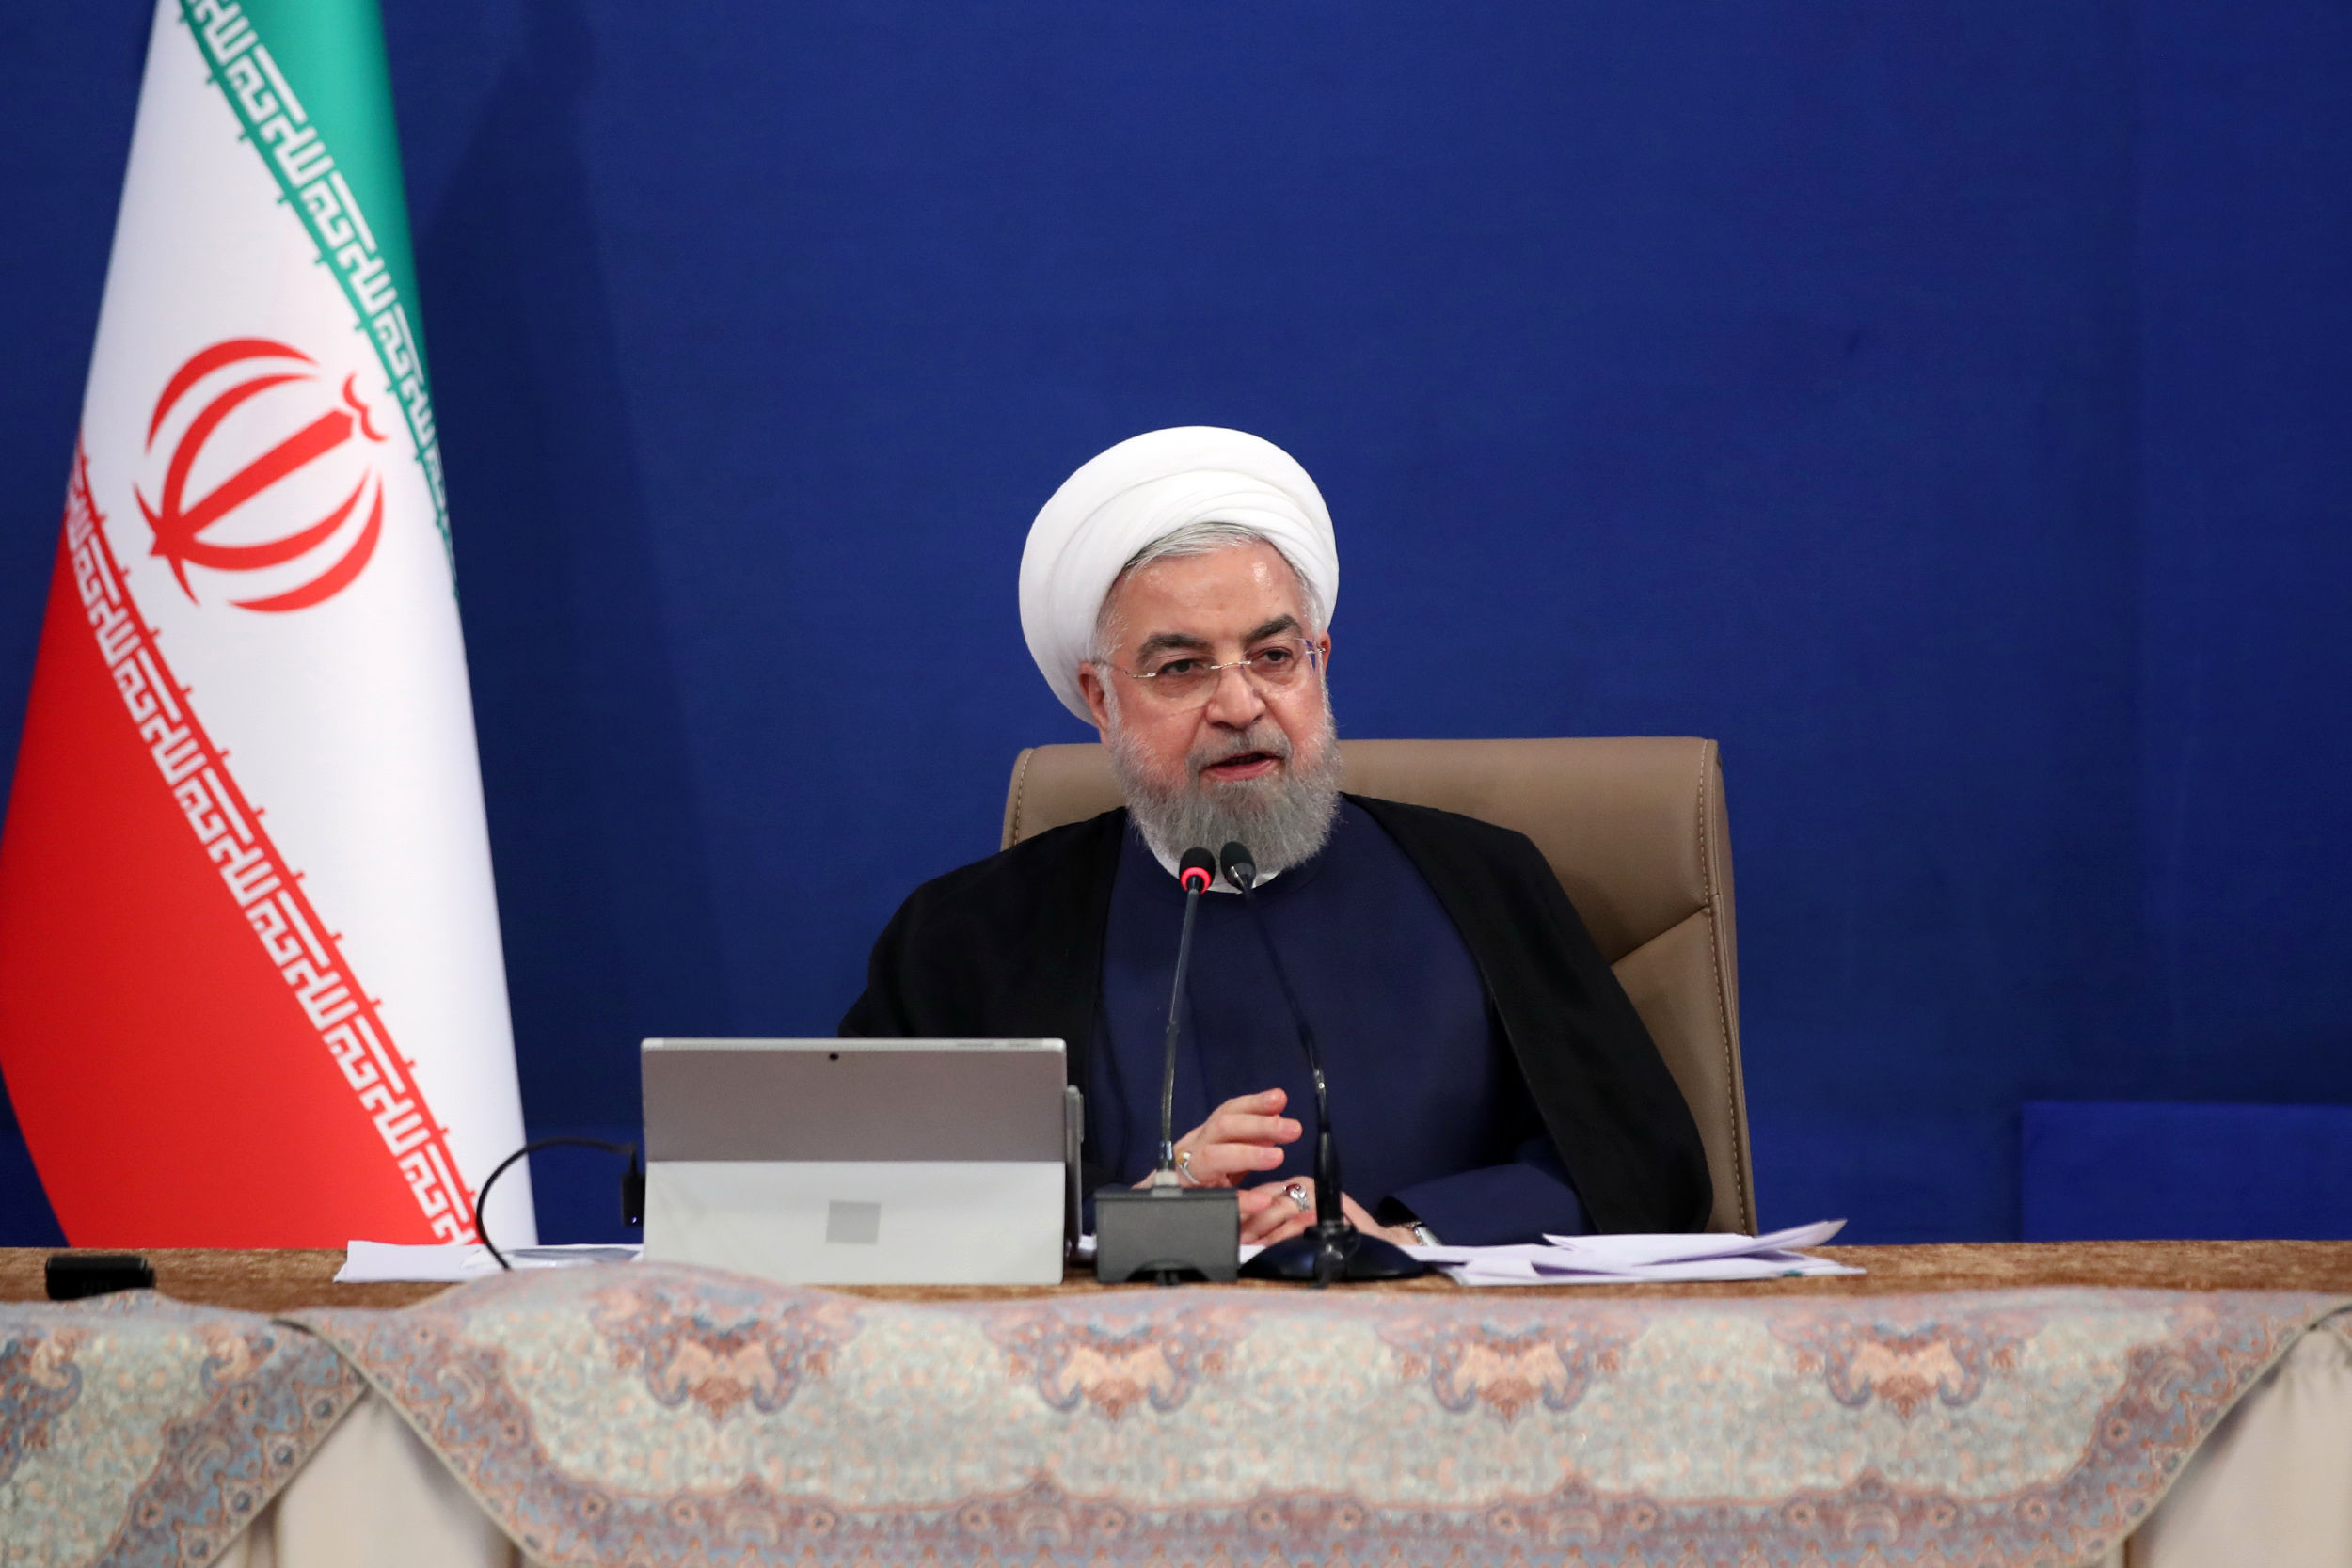 لقب جدید حسن روحانی، یک رئیس جمهور بداقبال